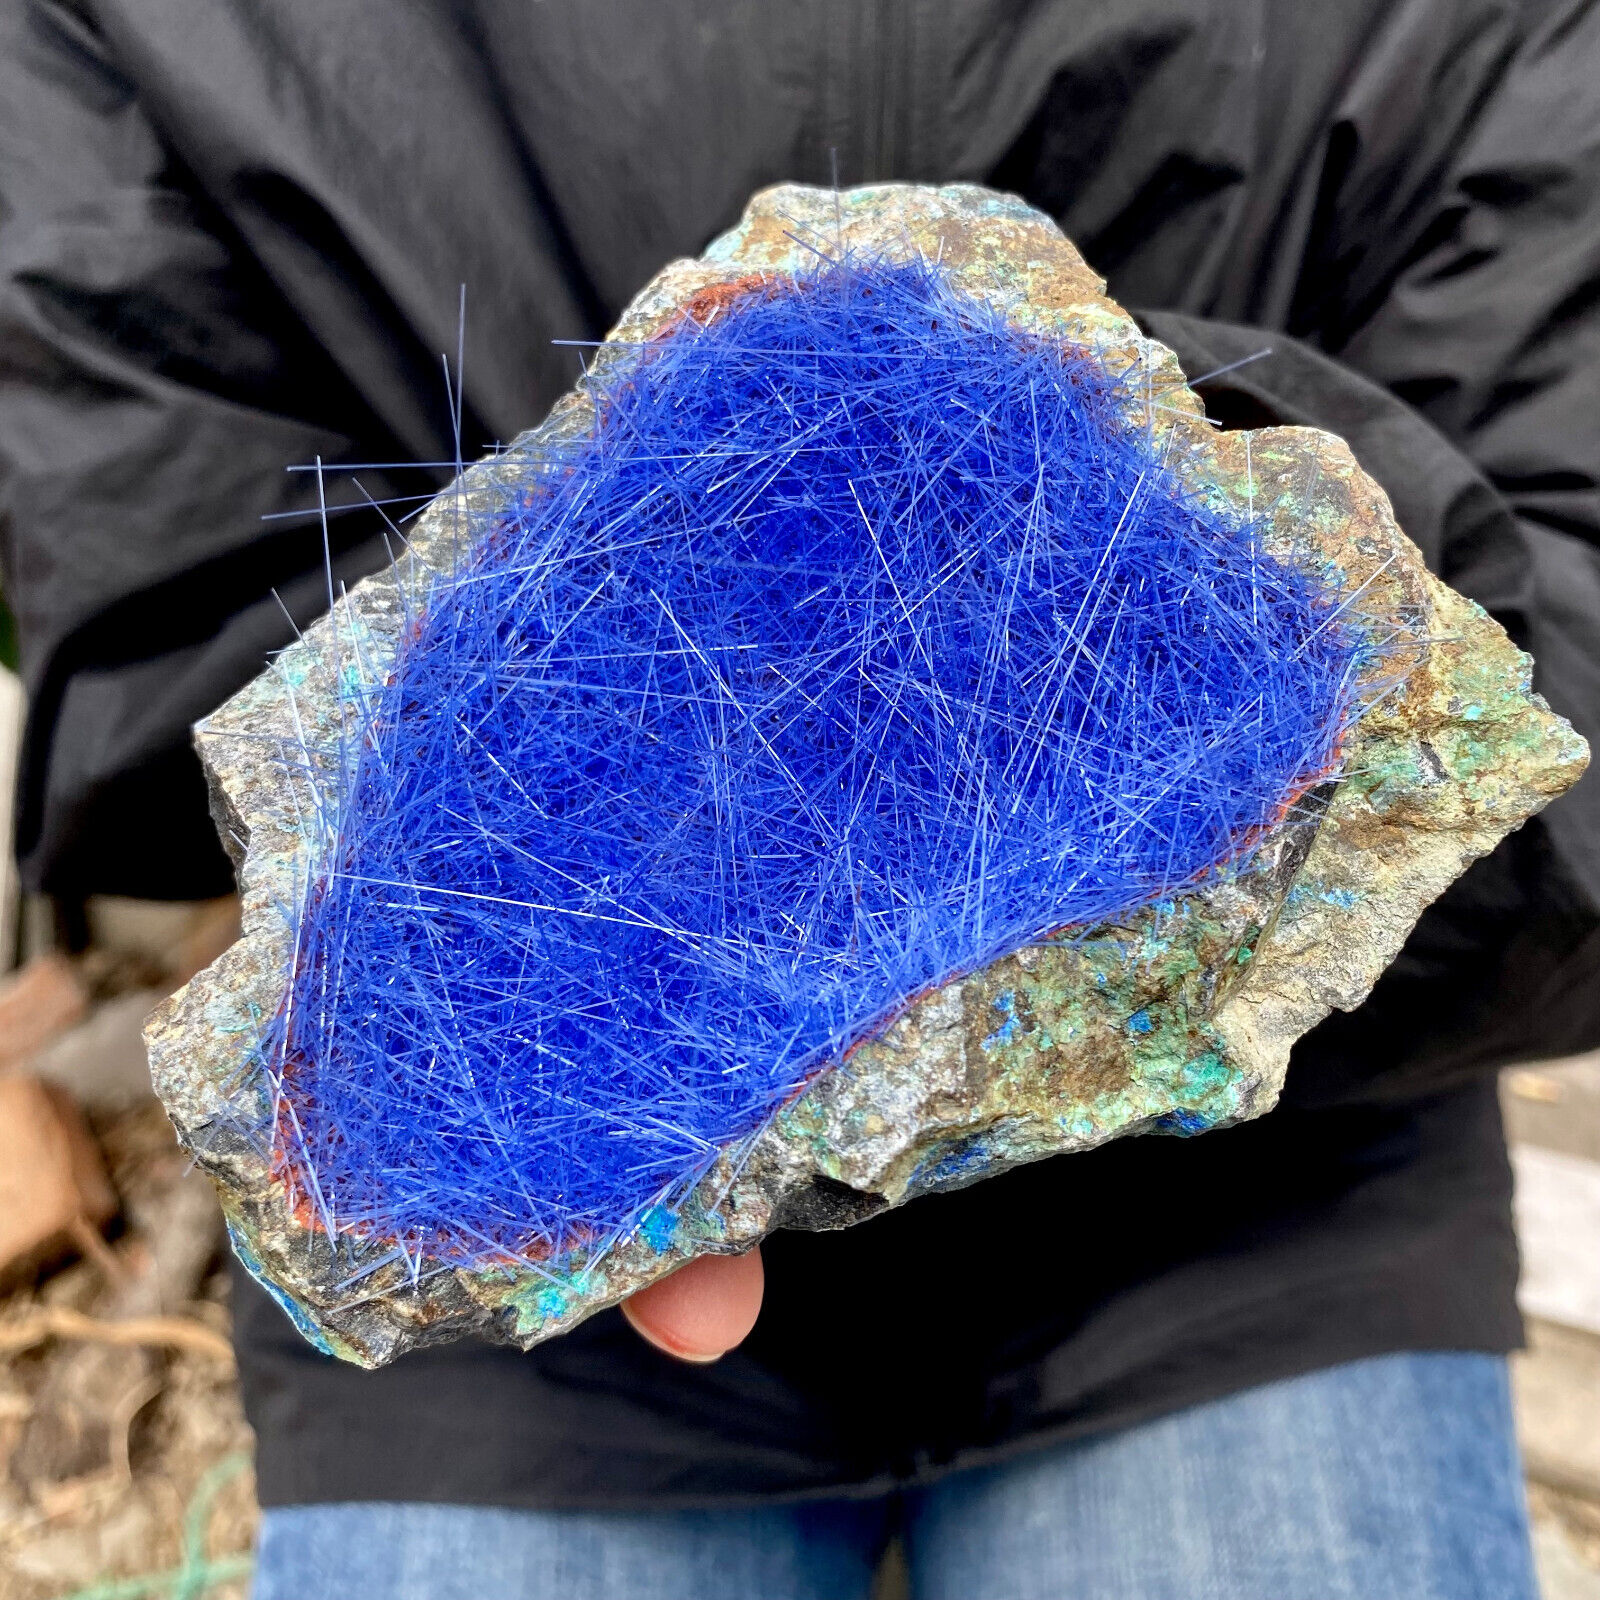 430G Rare Moroccan blue magnesite and quartz crystal coexisting specimen